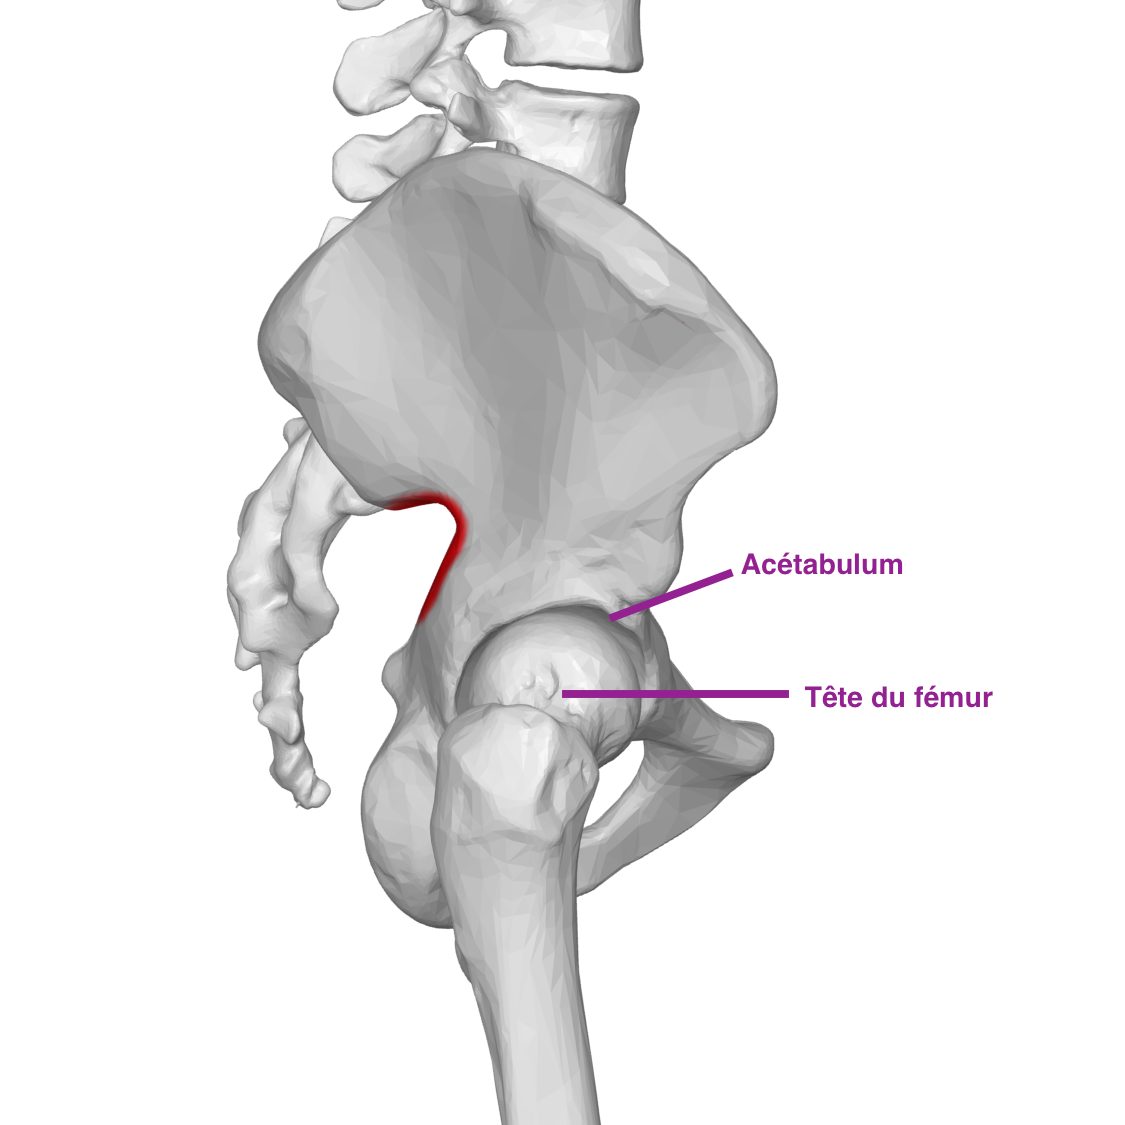 Prothèse de hanche : Que faire après la chirurgie ?